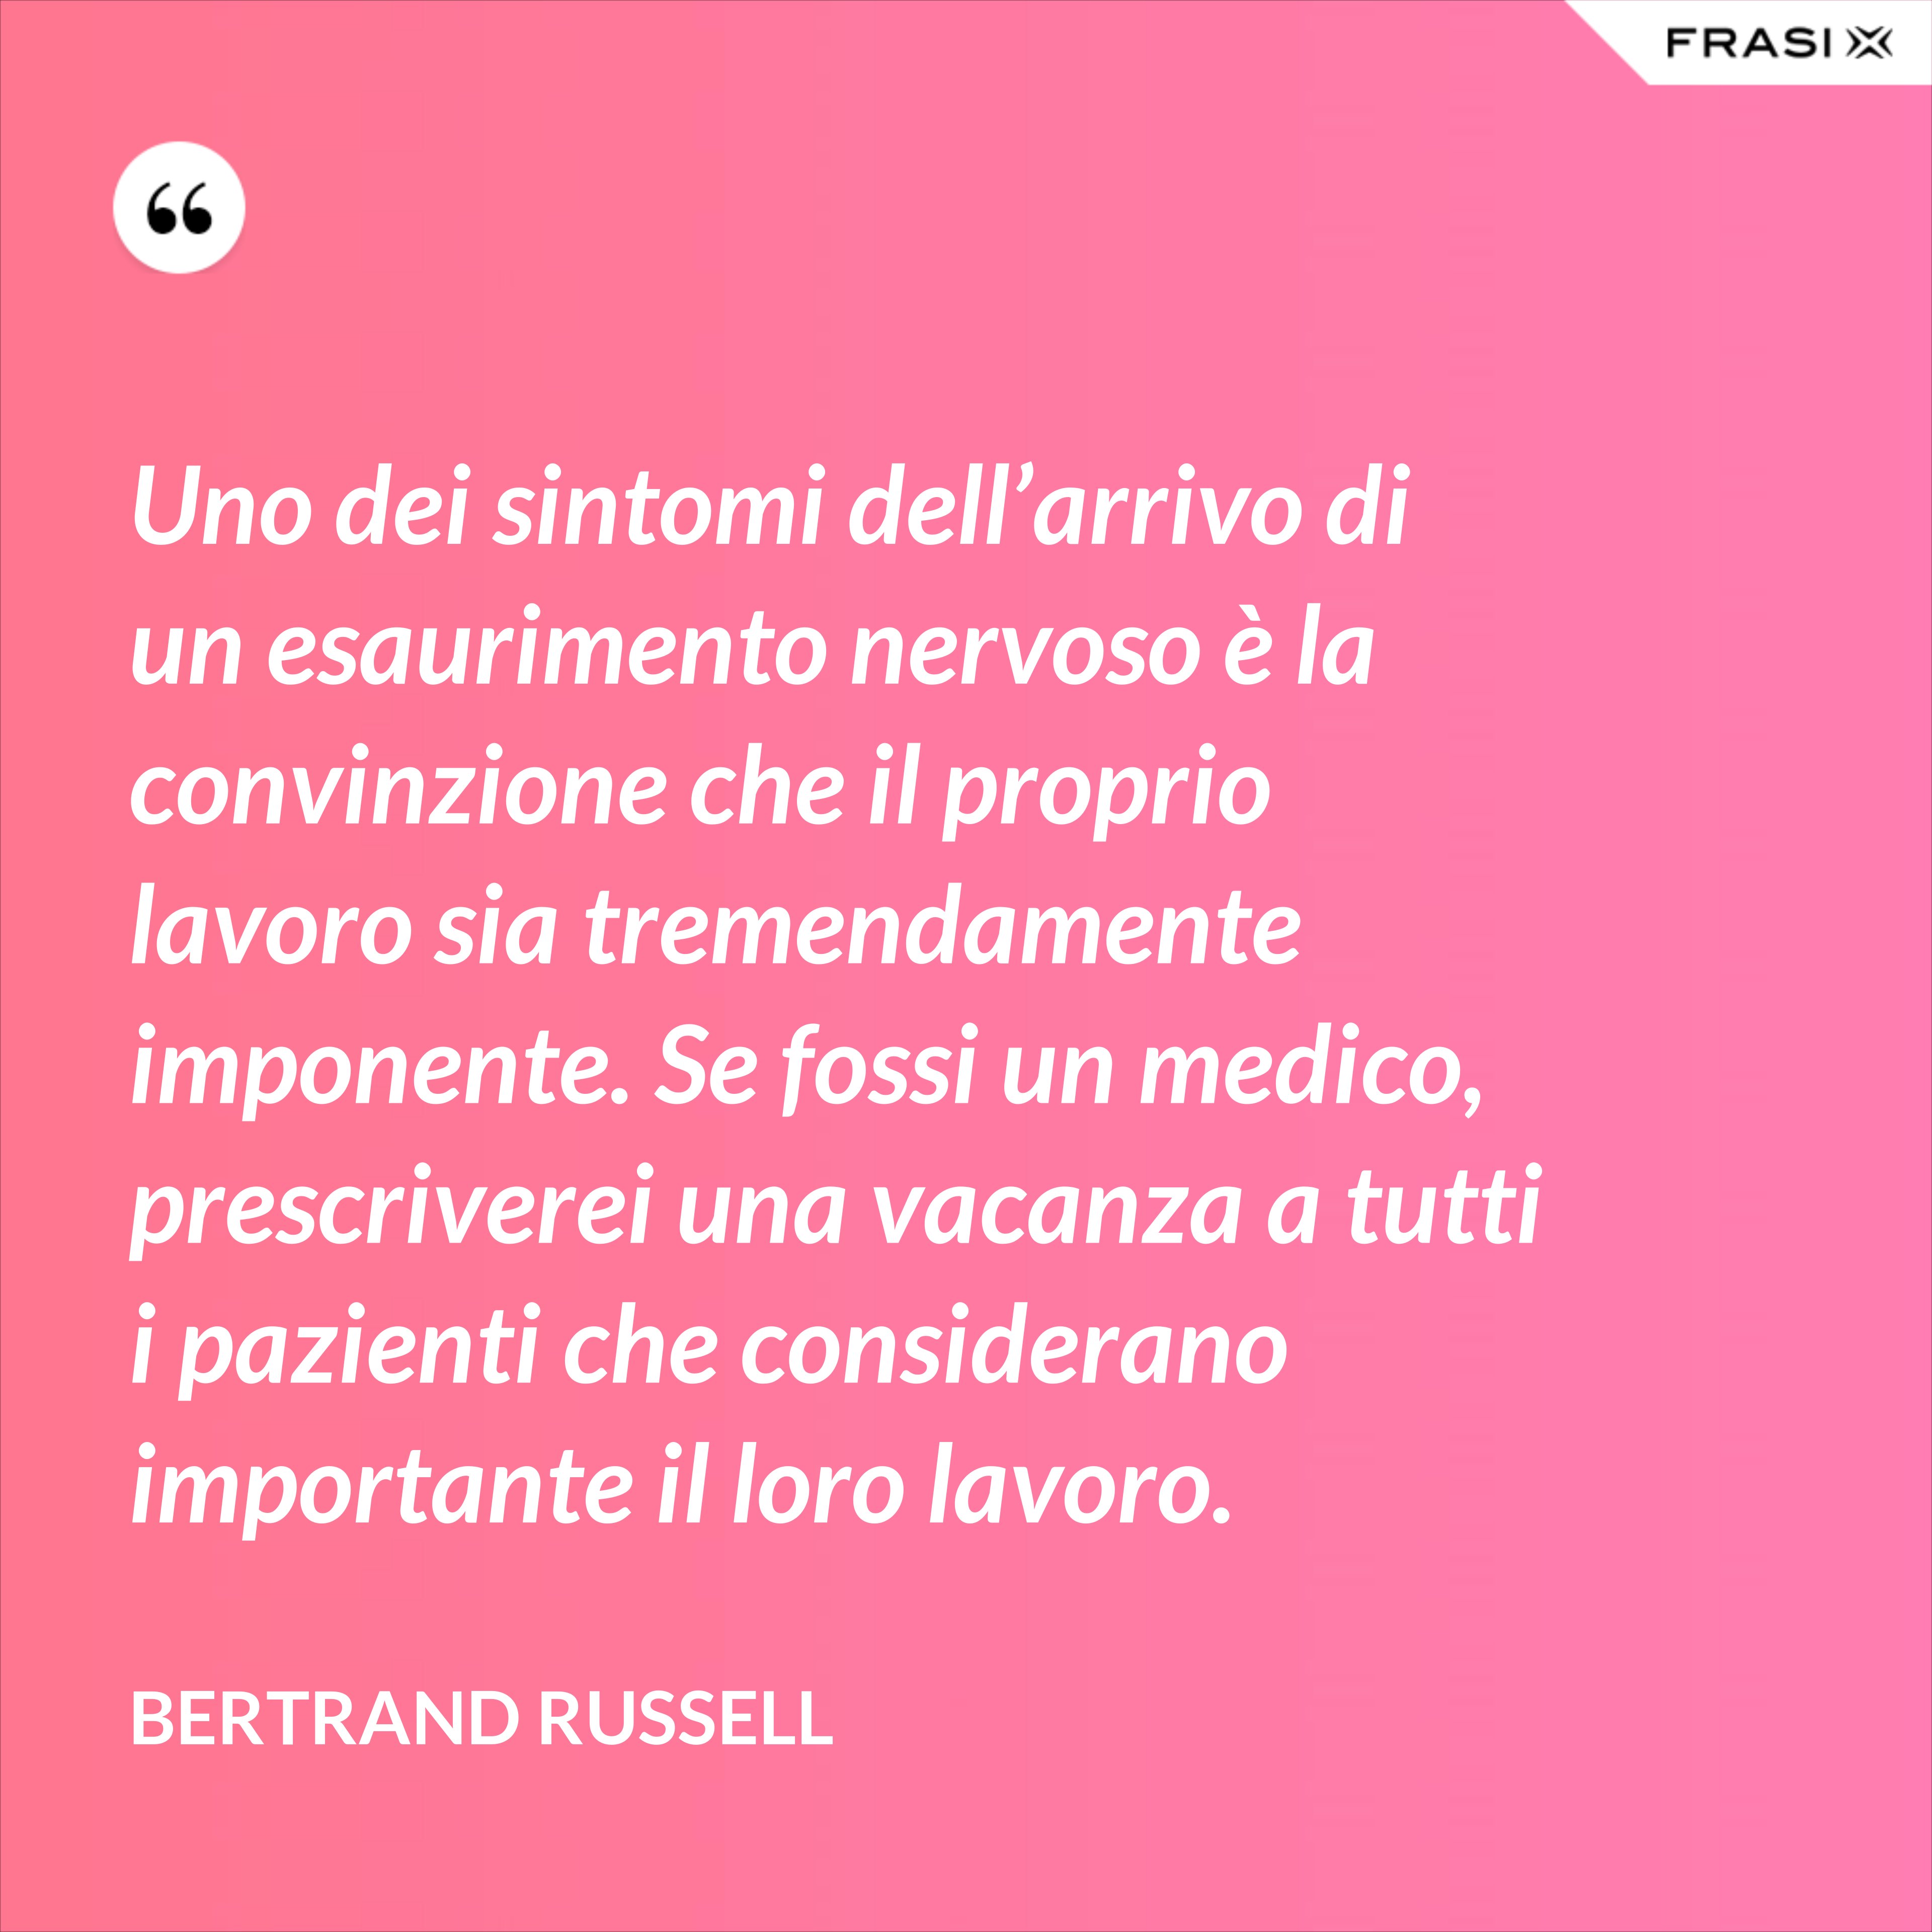 Uno dei sintomi dell’arrivo di un esaurimento nervoso è la convinzione che il proprio lavoro sia tremendamente imponente. Se fossi un medico, prescriverei una vacanza a tutti i pazienti che considerano importante il loro lavoro. - Bertrand Russell